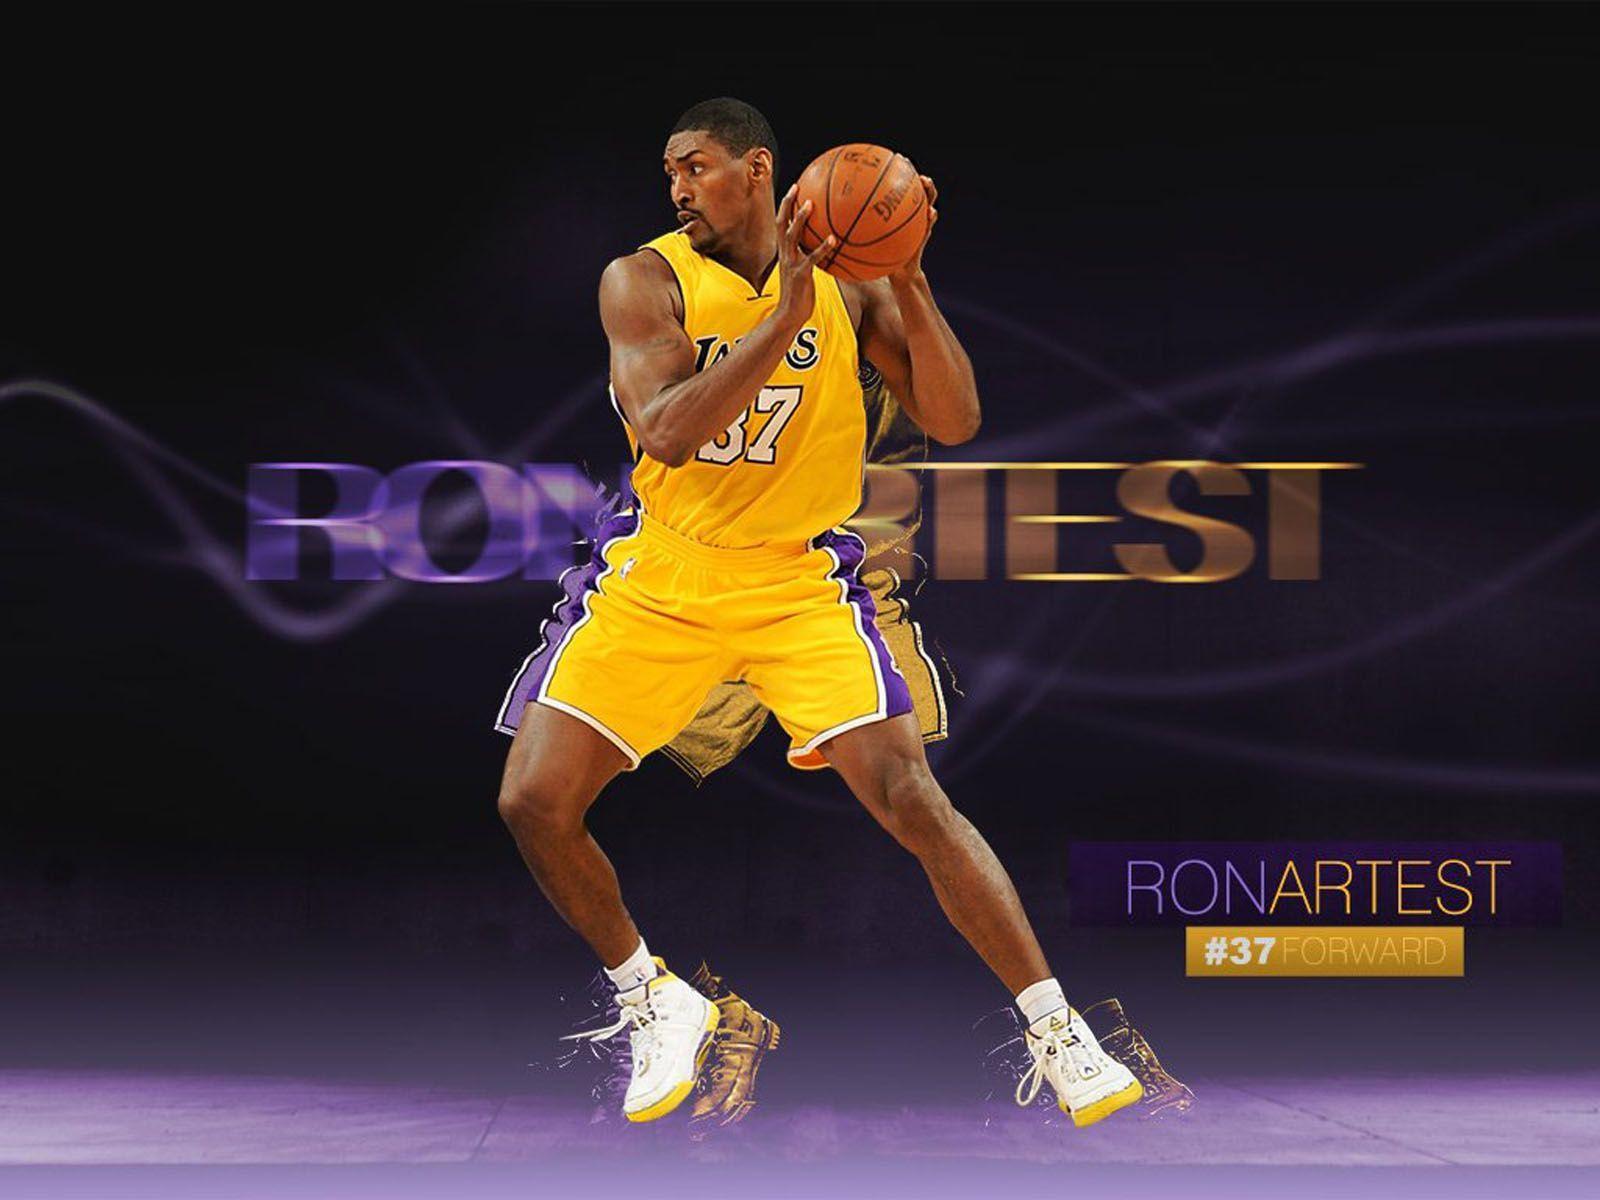 wallpaper: Ron Artest Basket Ball Player